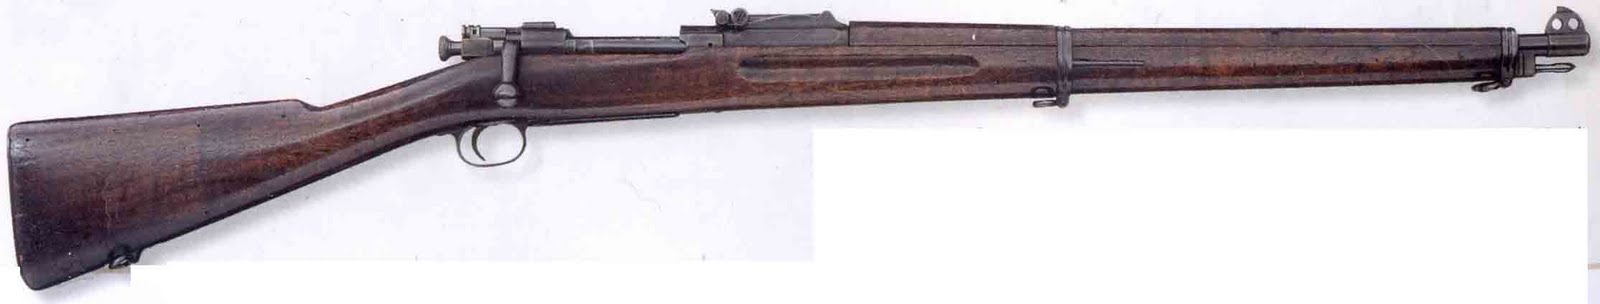 German World War 1 Guns